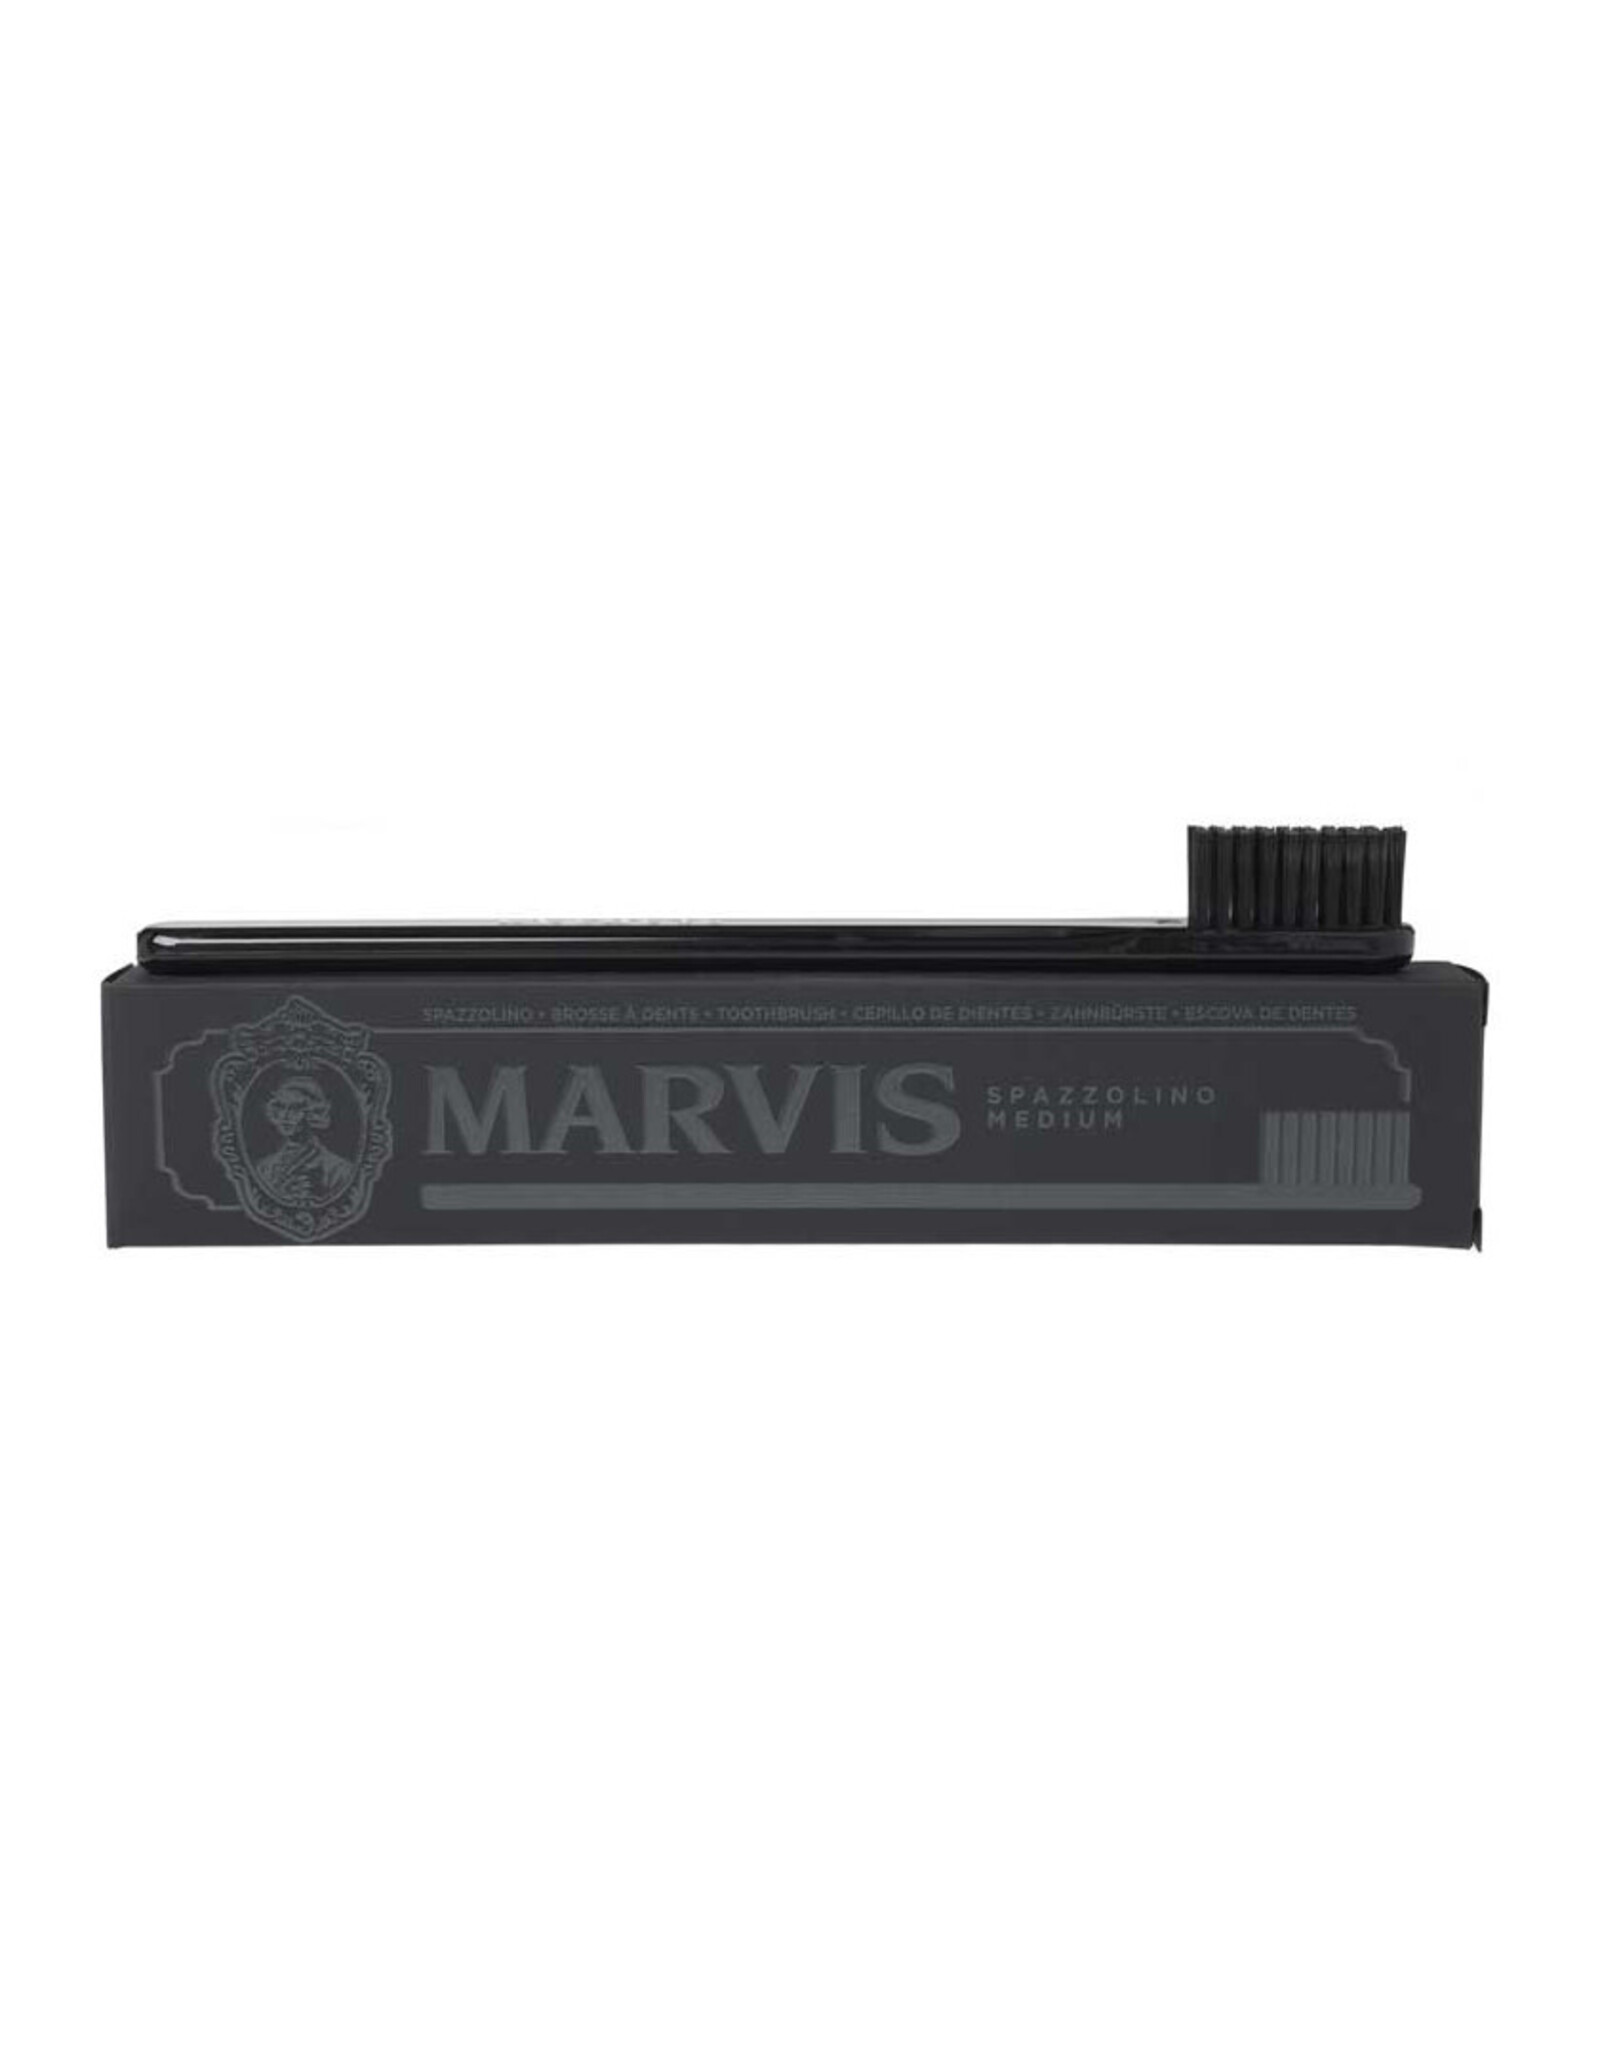 Marvis Black Toothbrush - Medium Bristle